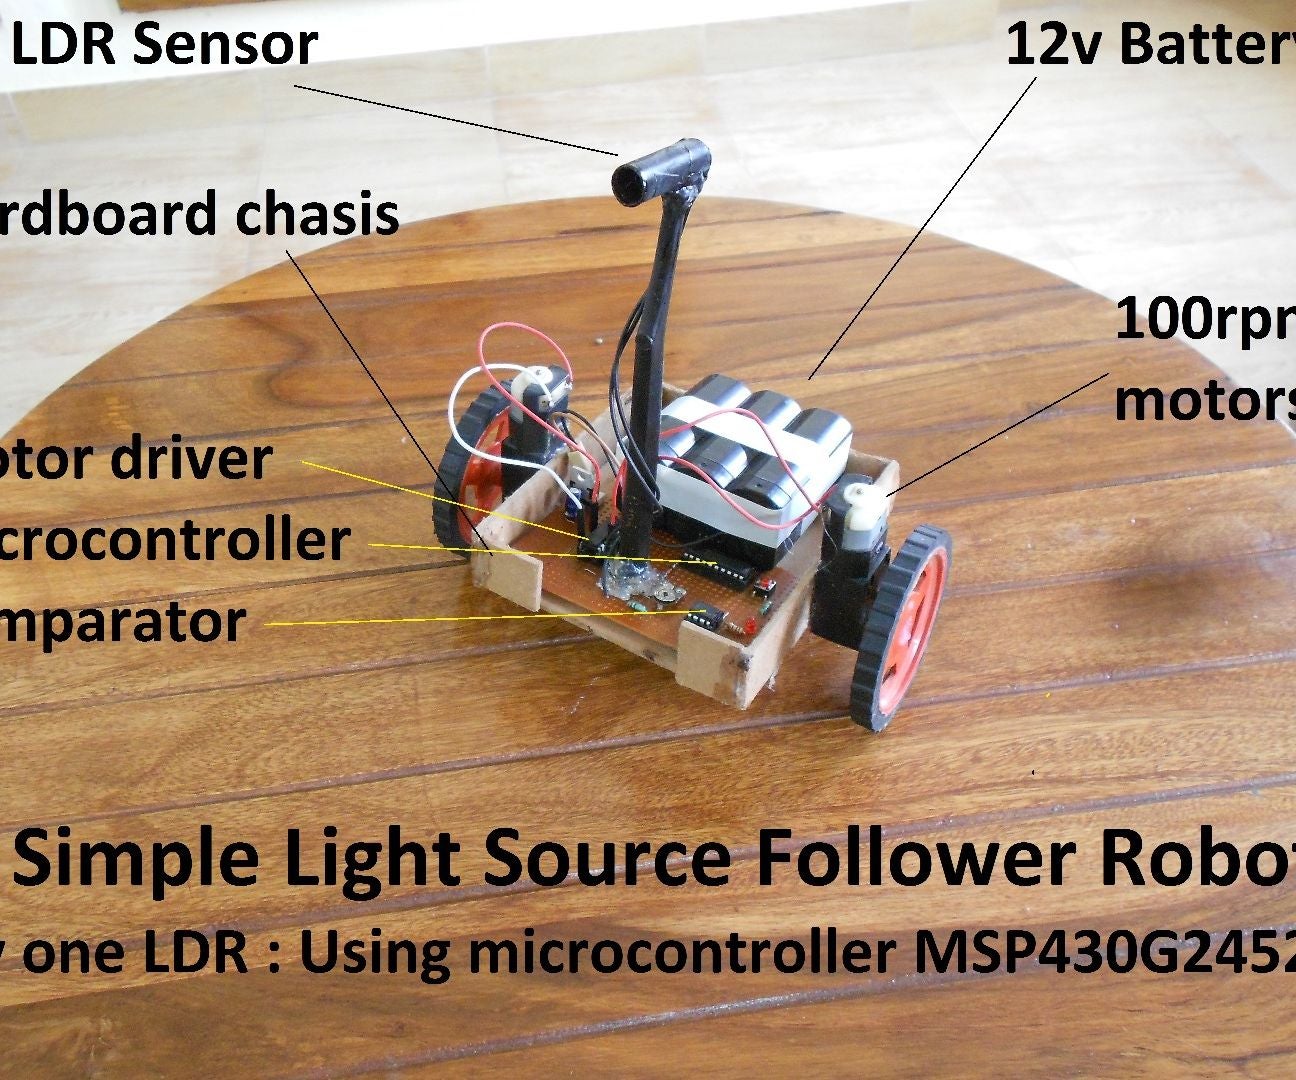 Simplest Light-Source Follower Robot